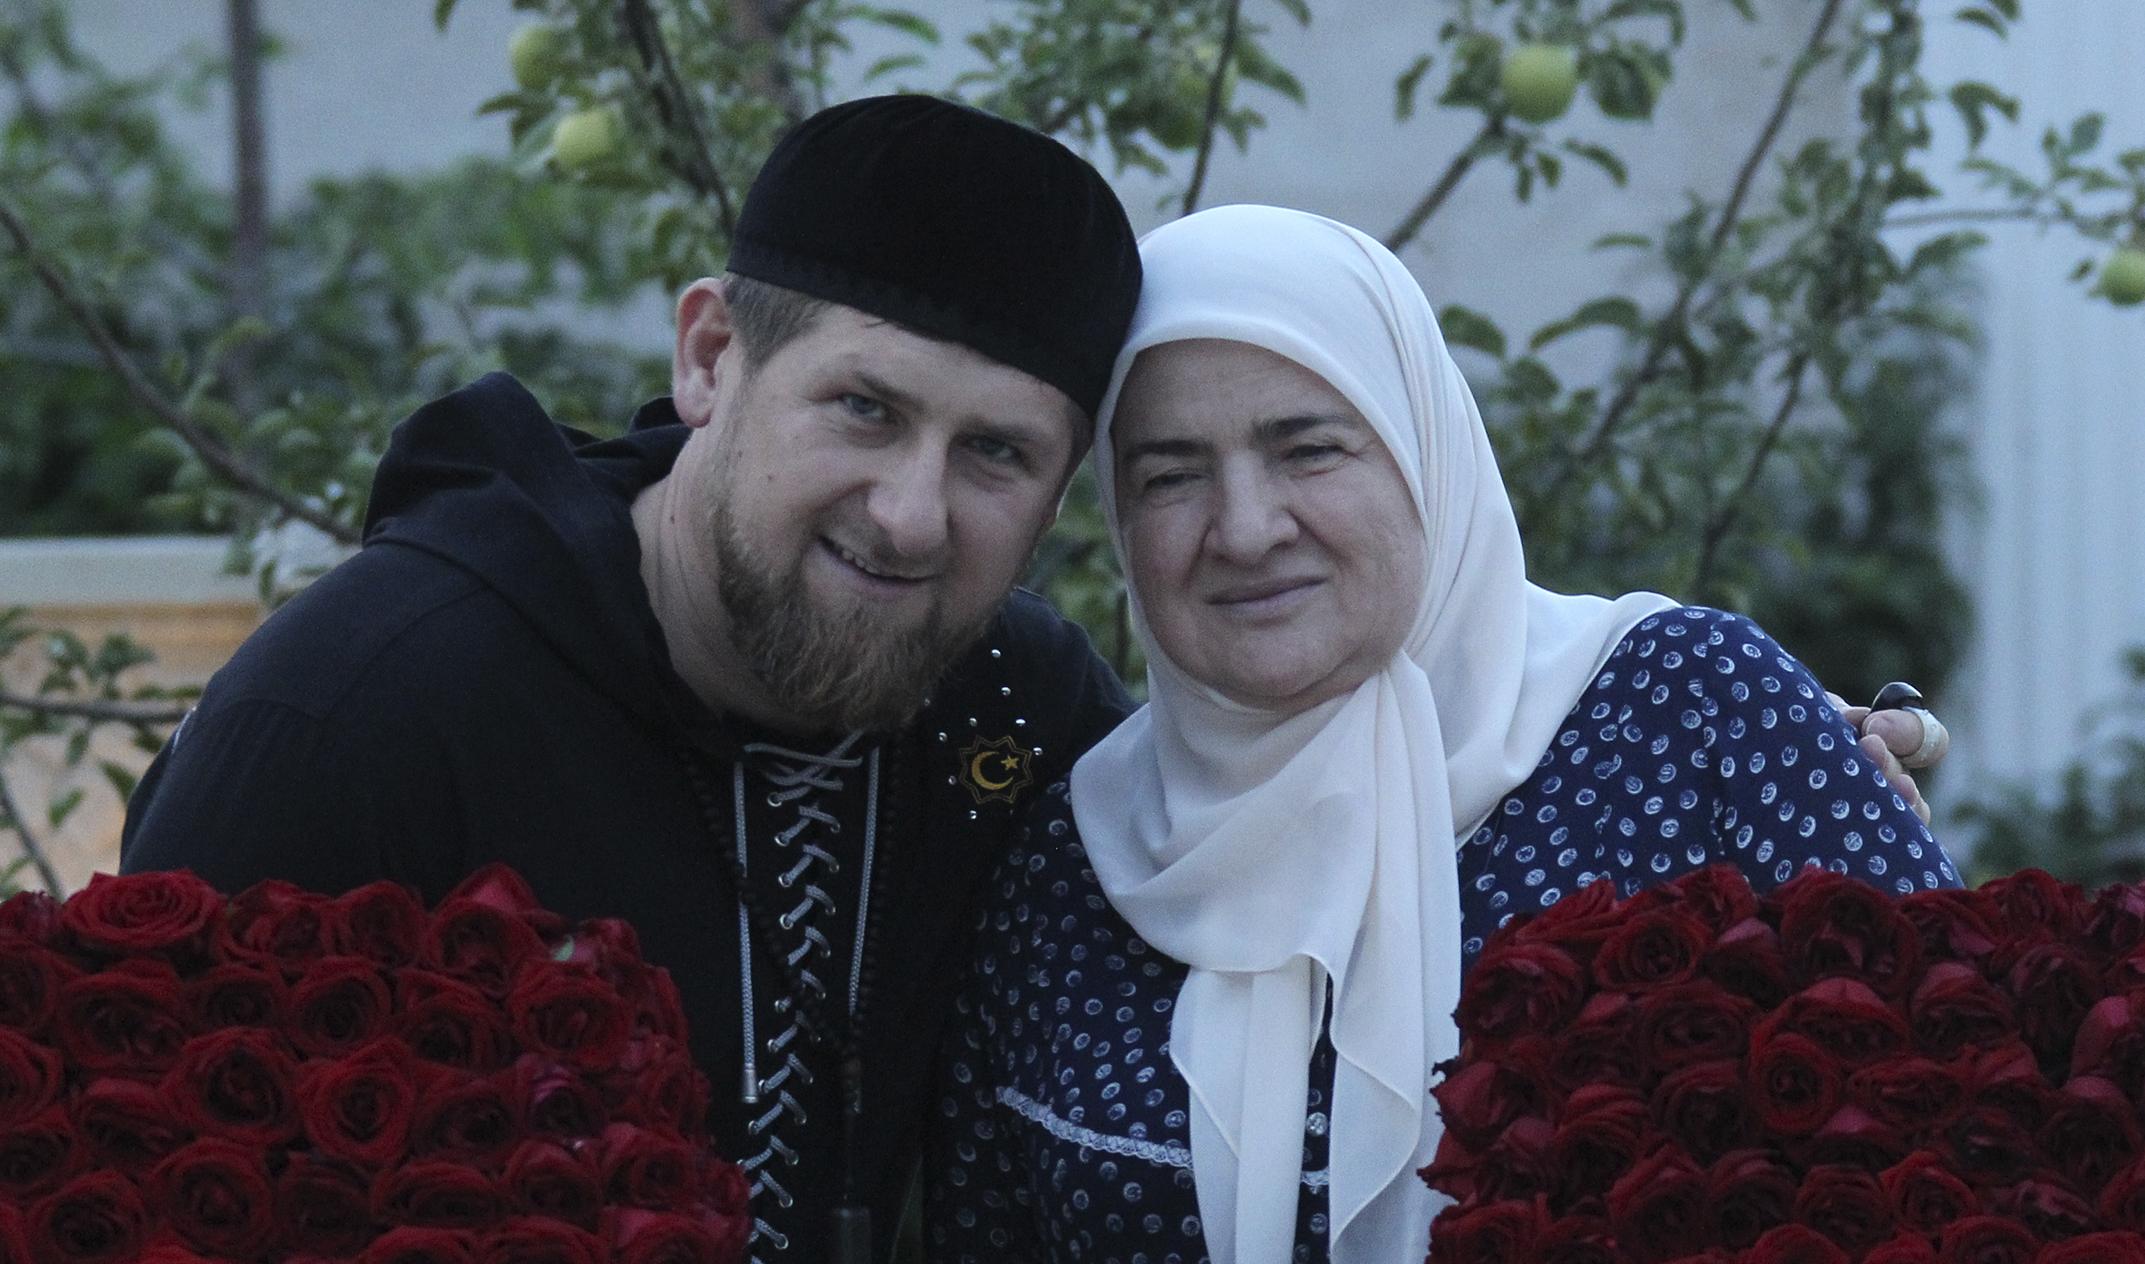 Рамзан Кадыров поздравил с днем рождения свою маму - Аймани Кадырову